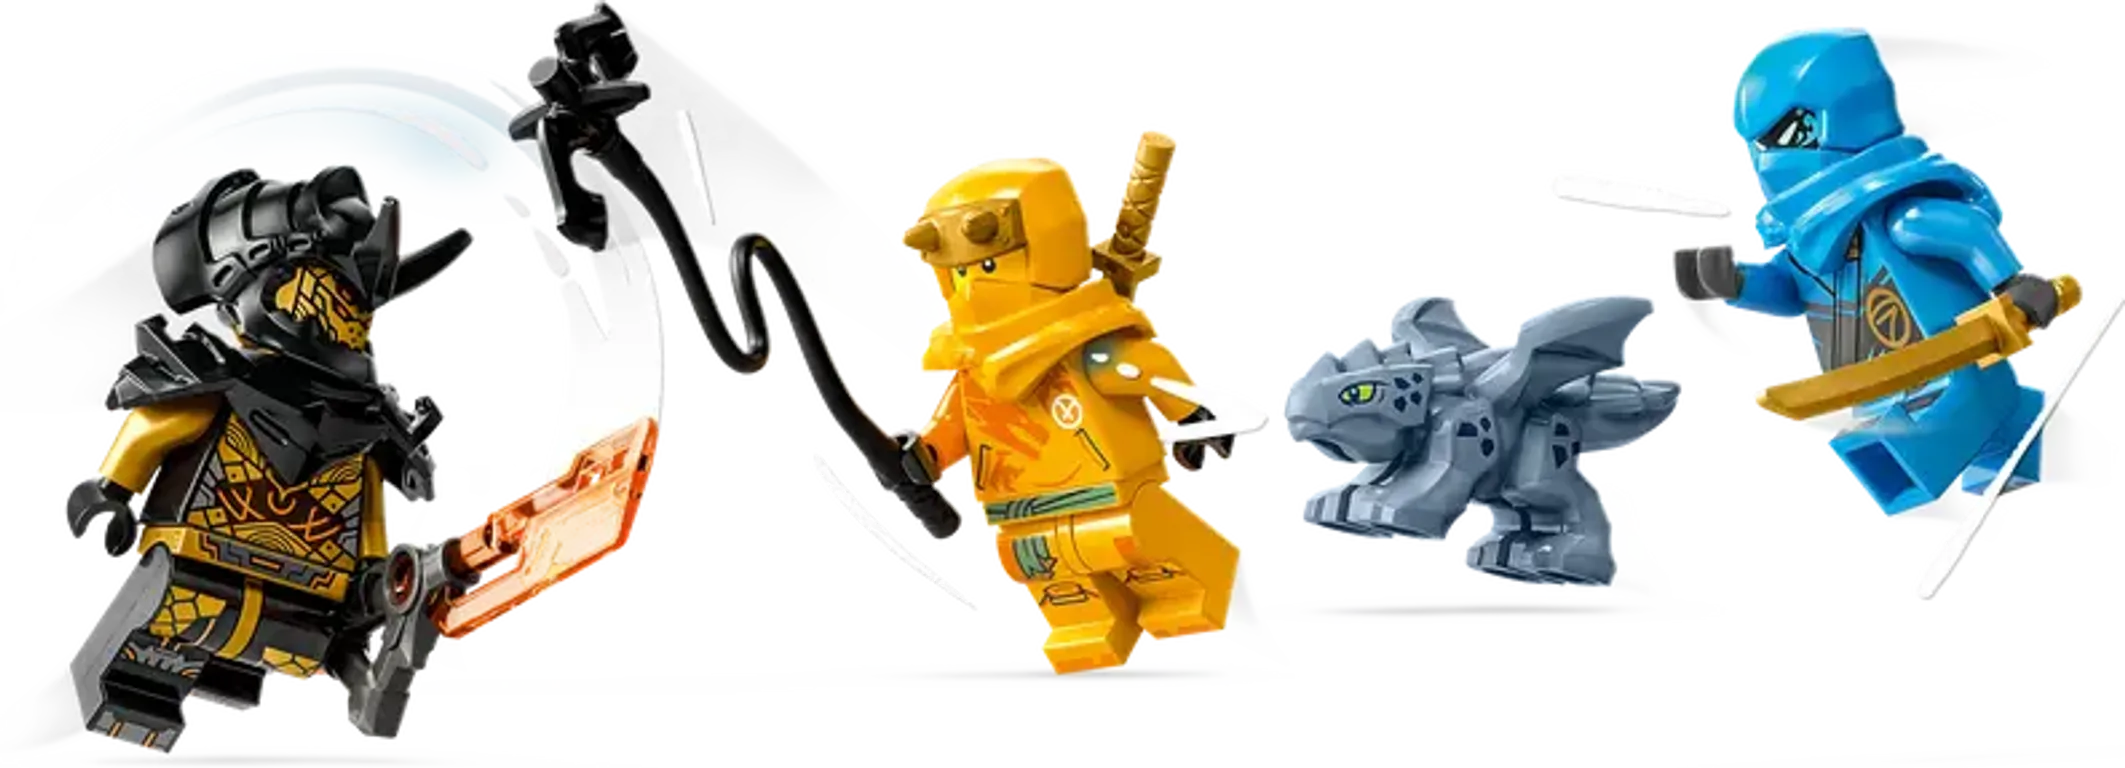 LEGO® Ninjago Nya and Arin's Baby Dragon Battle minifigures